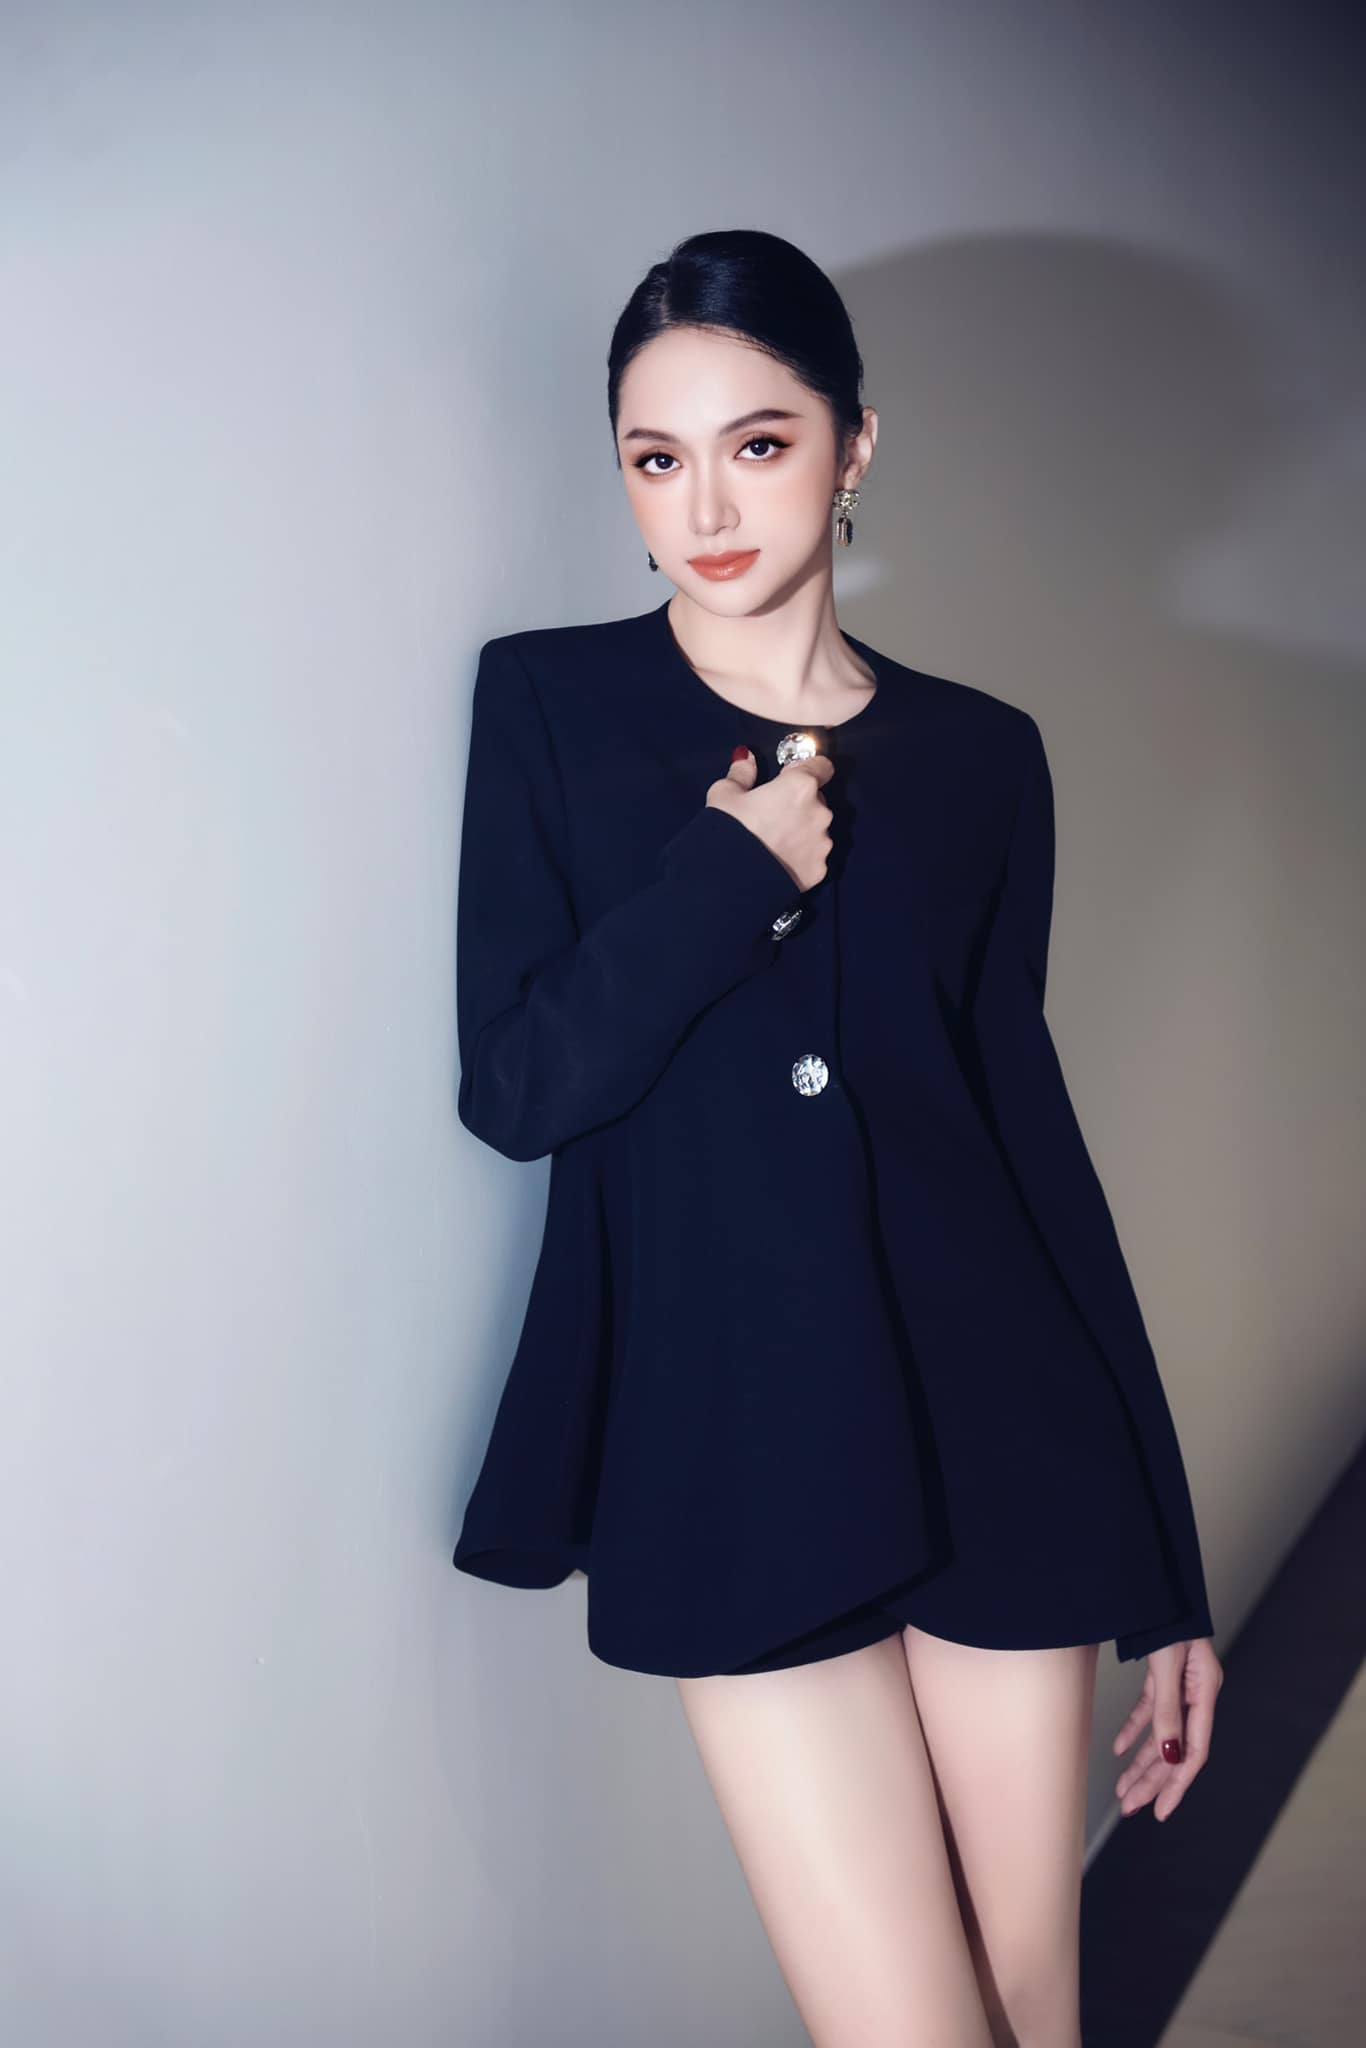 Hoa hậu Hương Giang kiếm tiền siêu giỏi ở tuổi 32: Có công ty giải trí riêng, biệt thự trải dài từ Bắc vào Nam, luôn có 1 thứ &quot;biểu tượng thượng lưu&quot; mang bên mình - Ảnh 1.